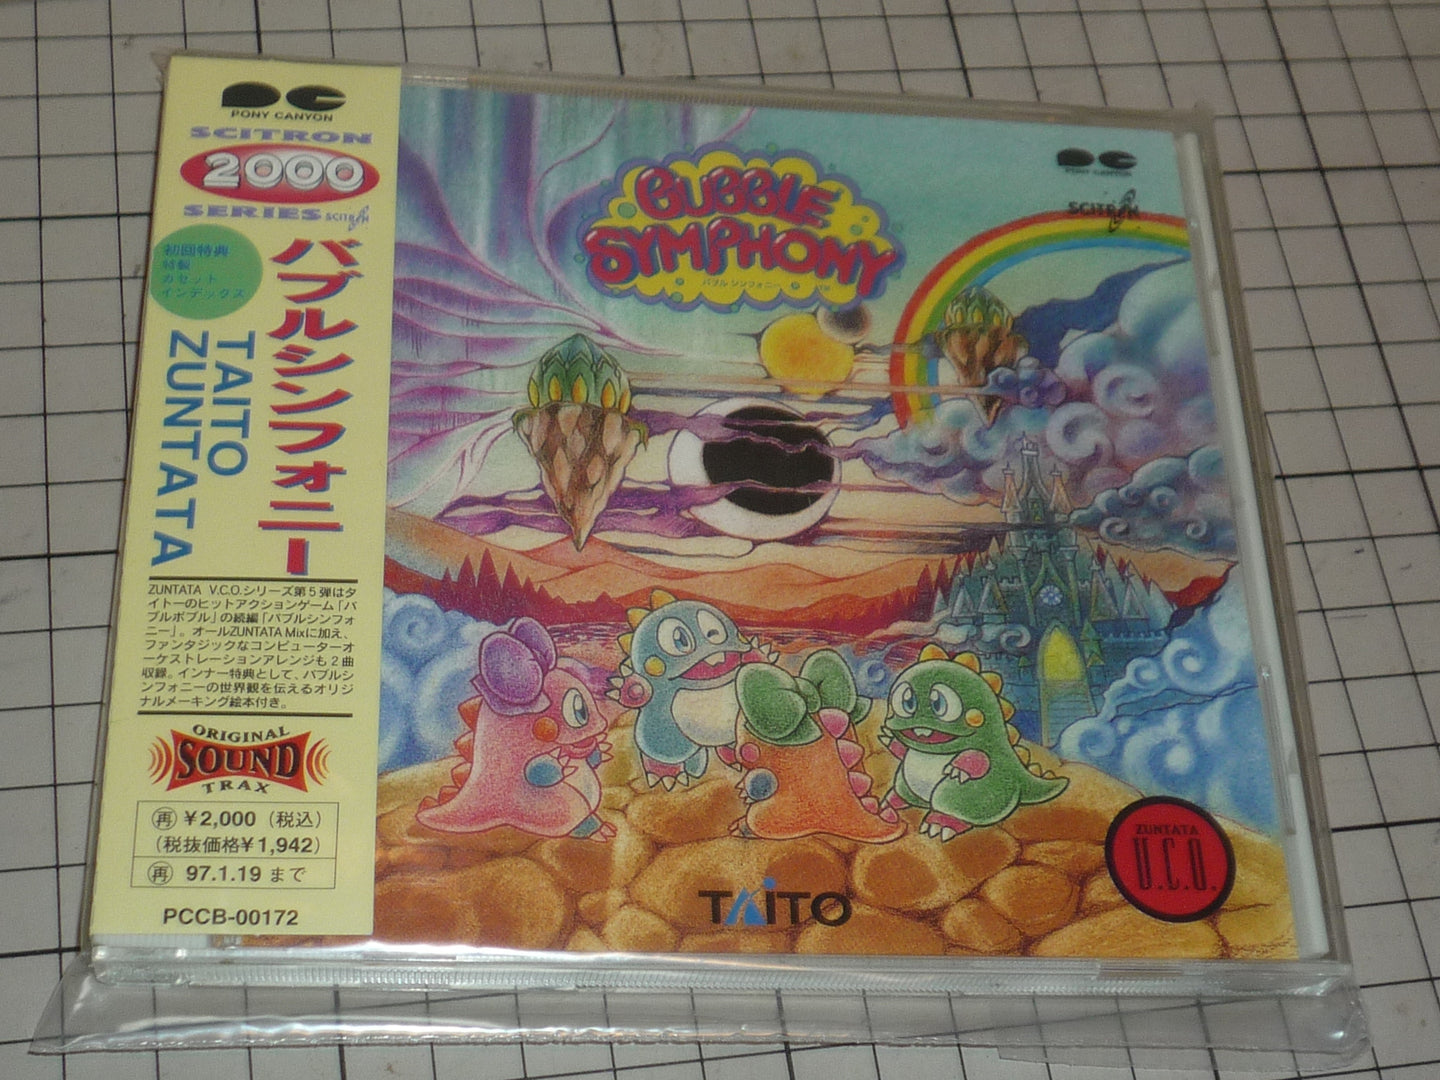 bubble symphony soundtrack original japanese cd